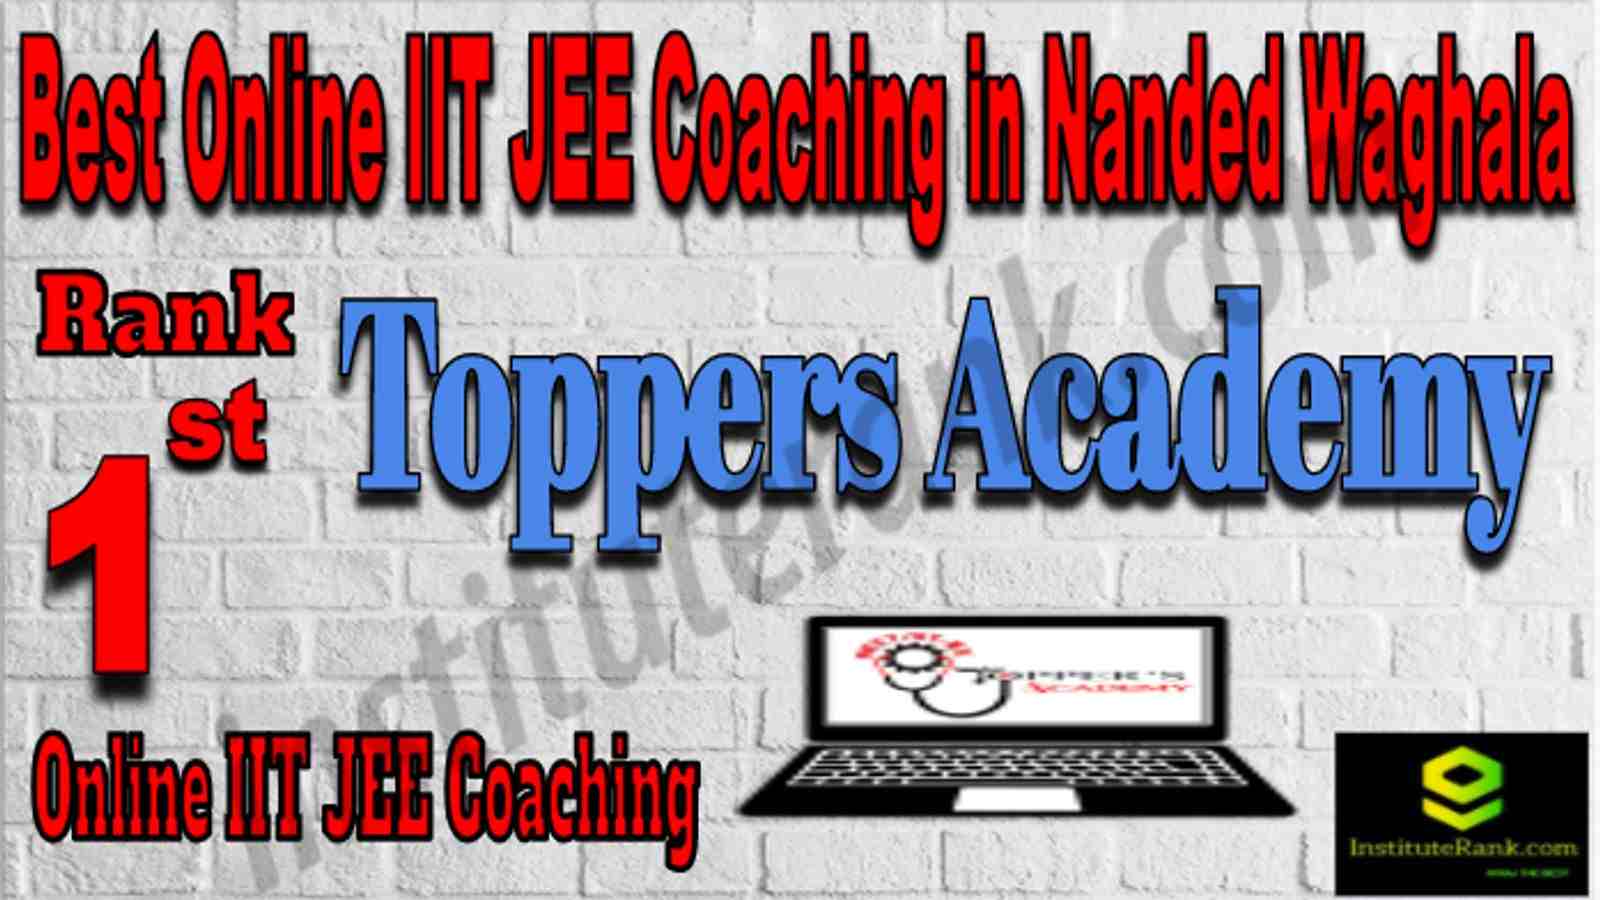 Rank 1 Best Online IIT JEE Coaching in Nanded Waghala